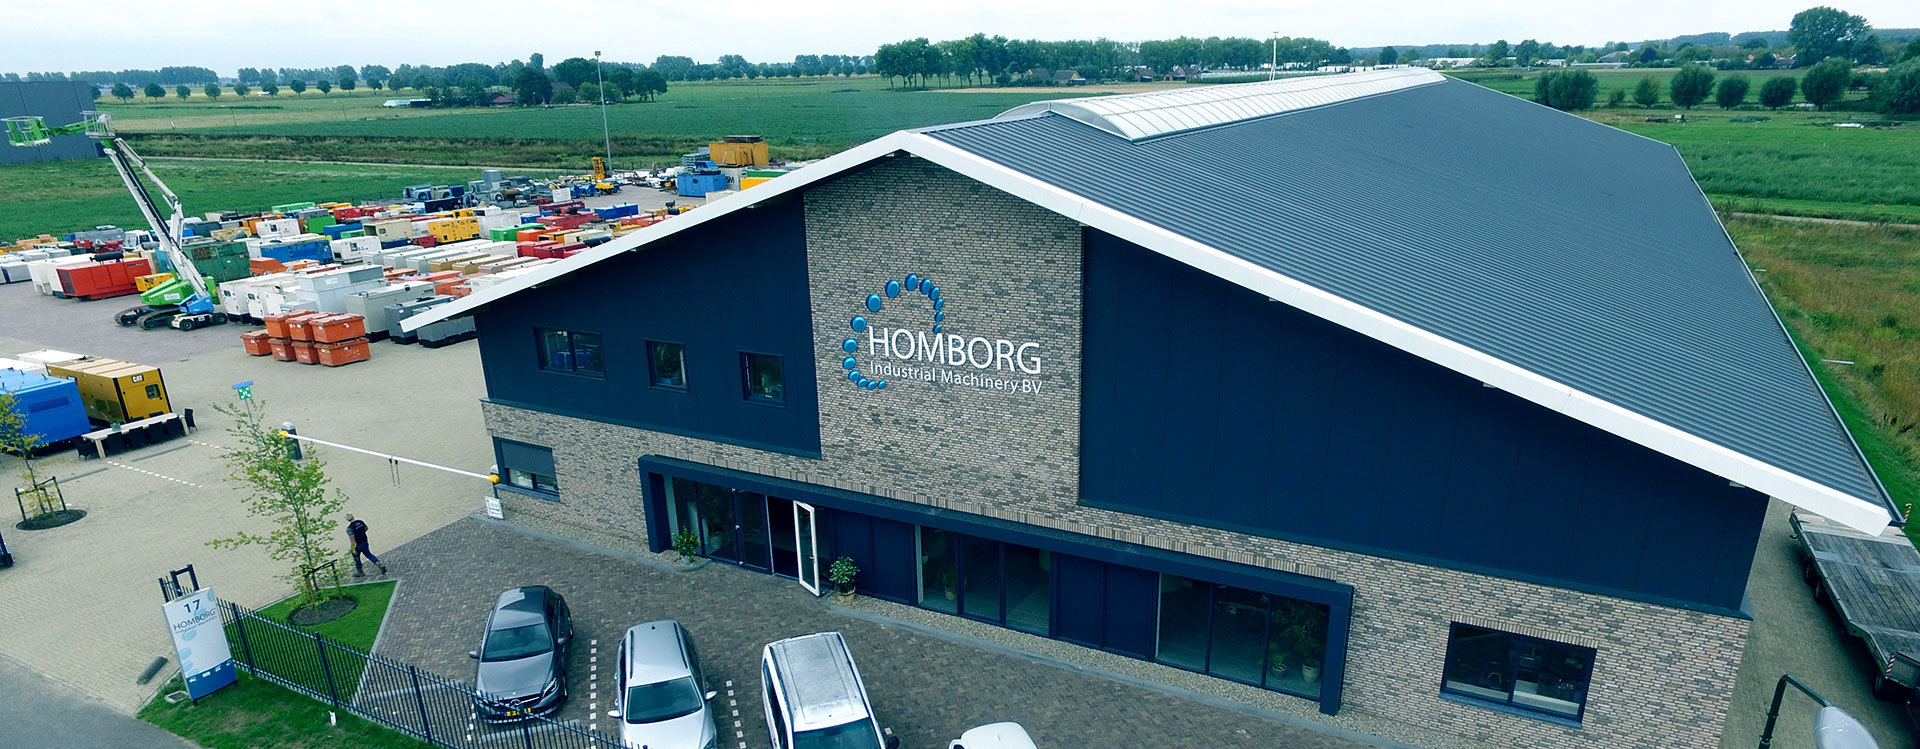 Homborg Industrial Machinery B.V.  - Pièces de rechange undefined: photos 1